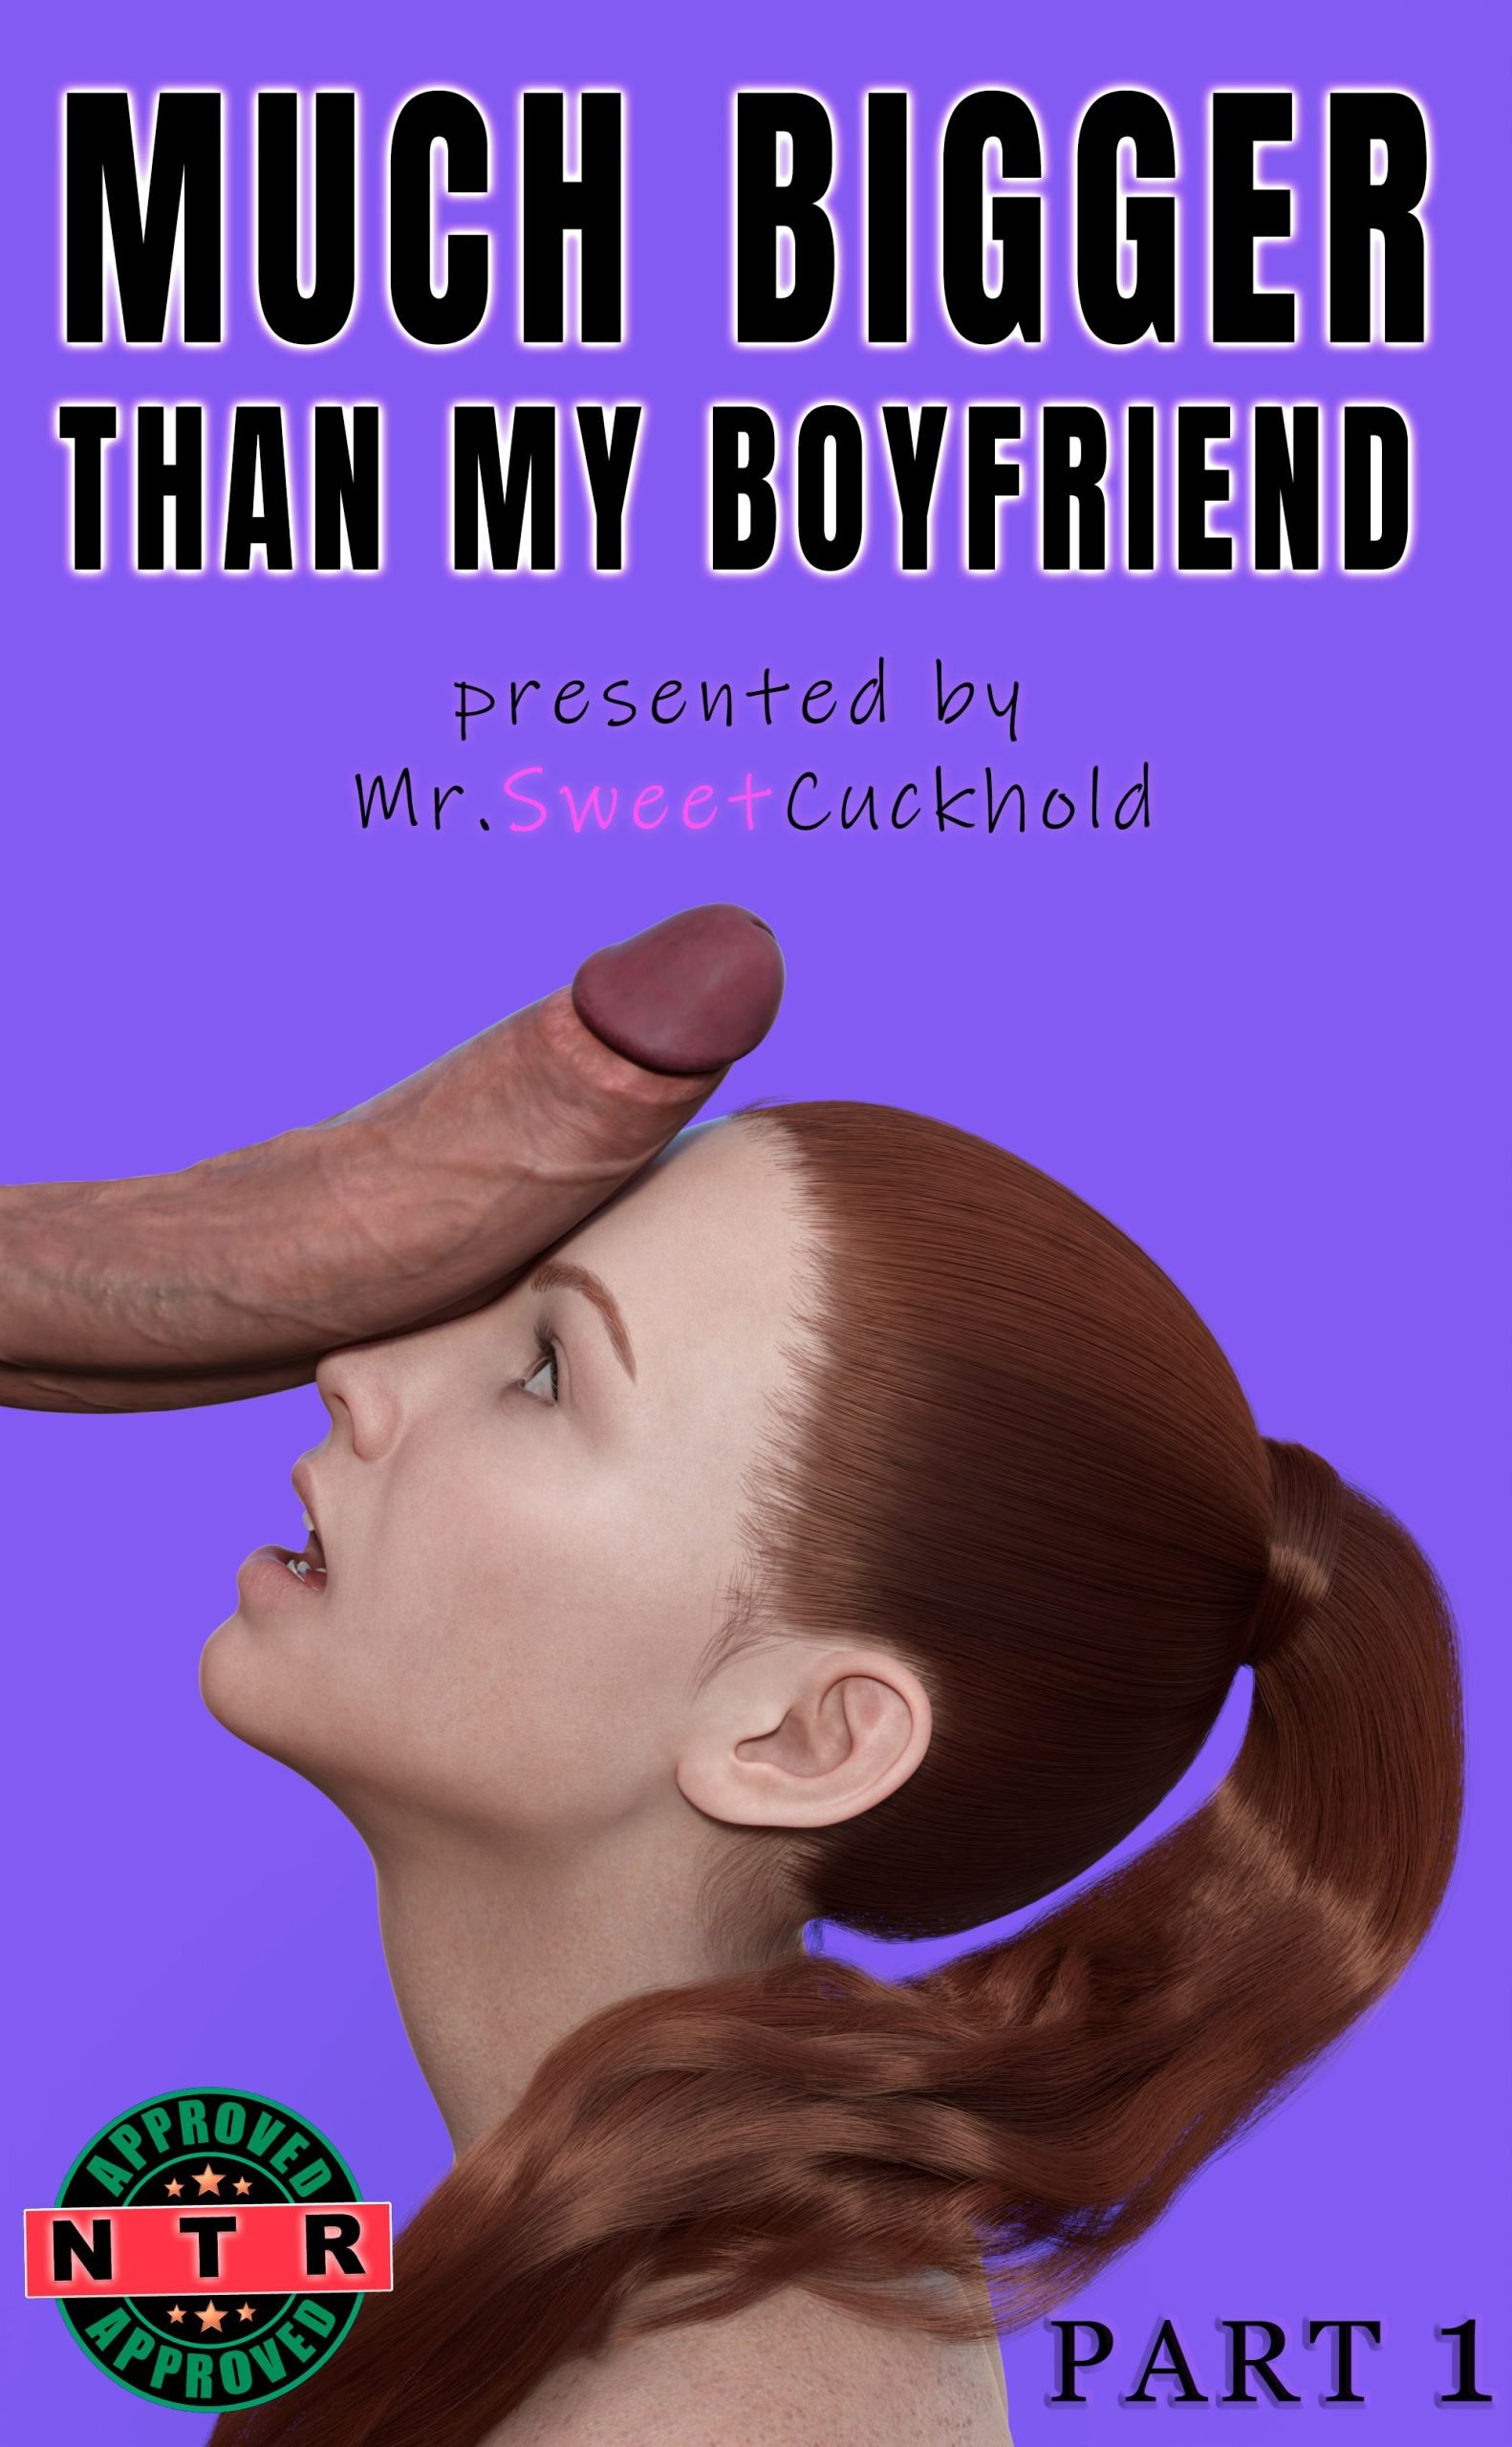 Much bigger than my boyfriend Mr.SweetCuckhold - 4 